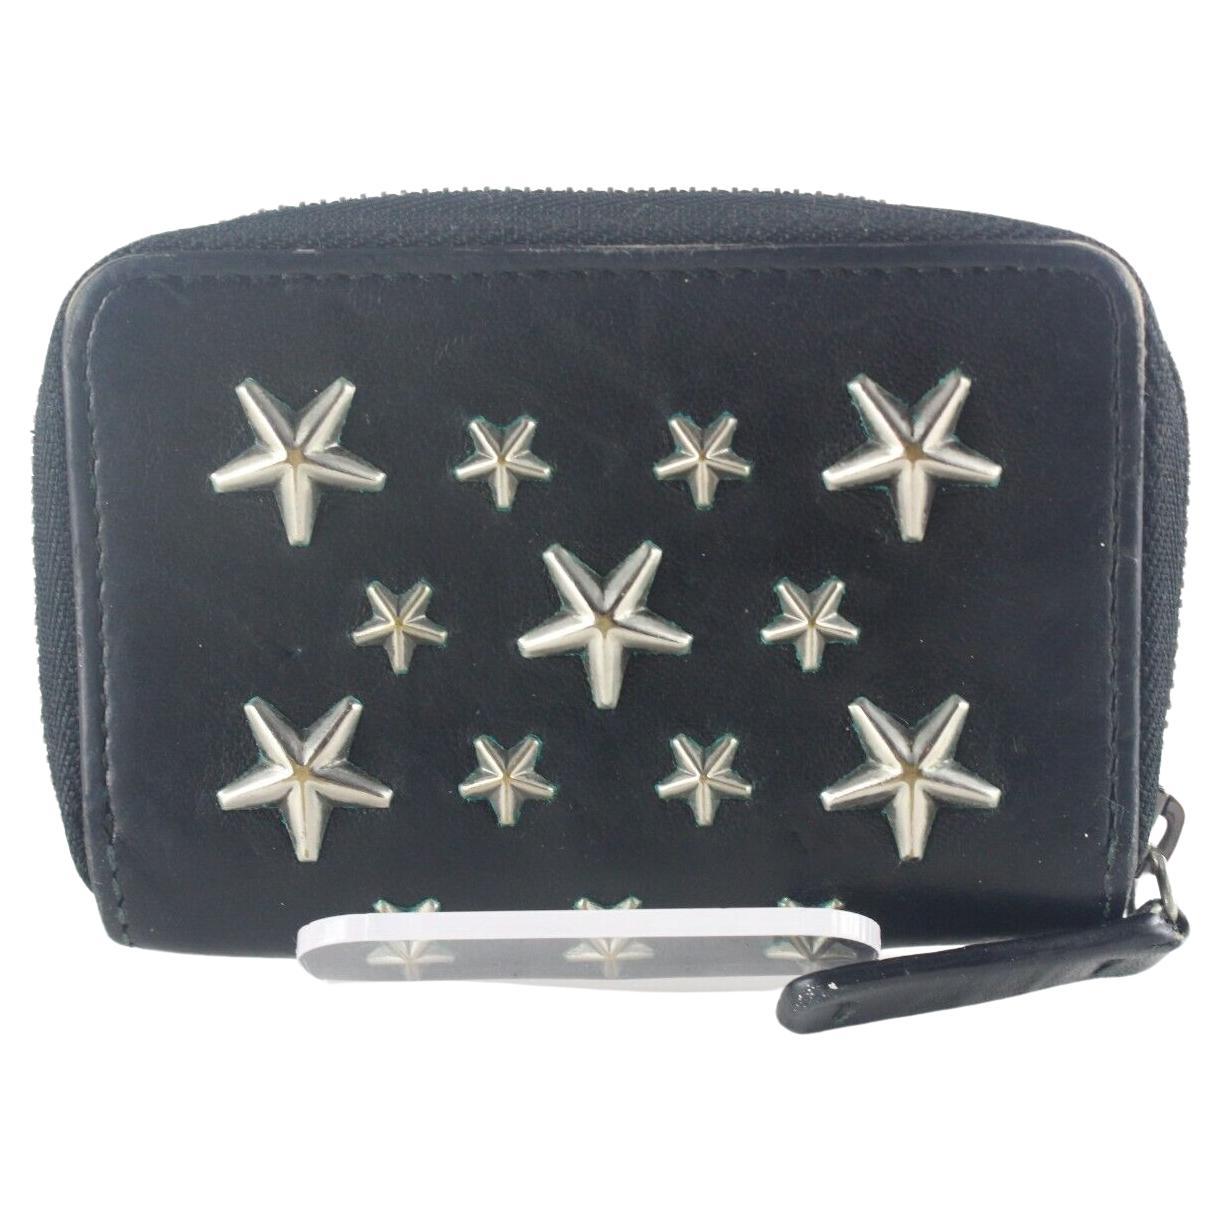 JIMMY CHOO Black Leather Star Zippy Wallet 1JC726K For Sale